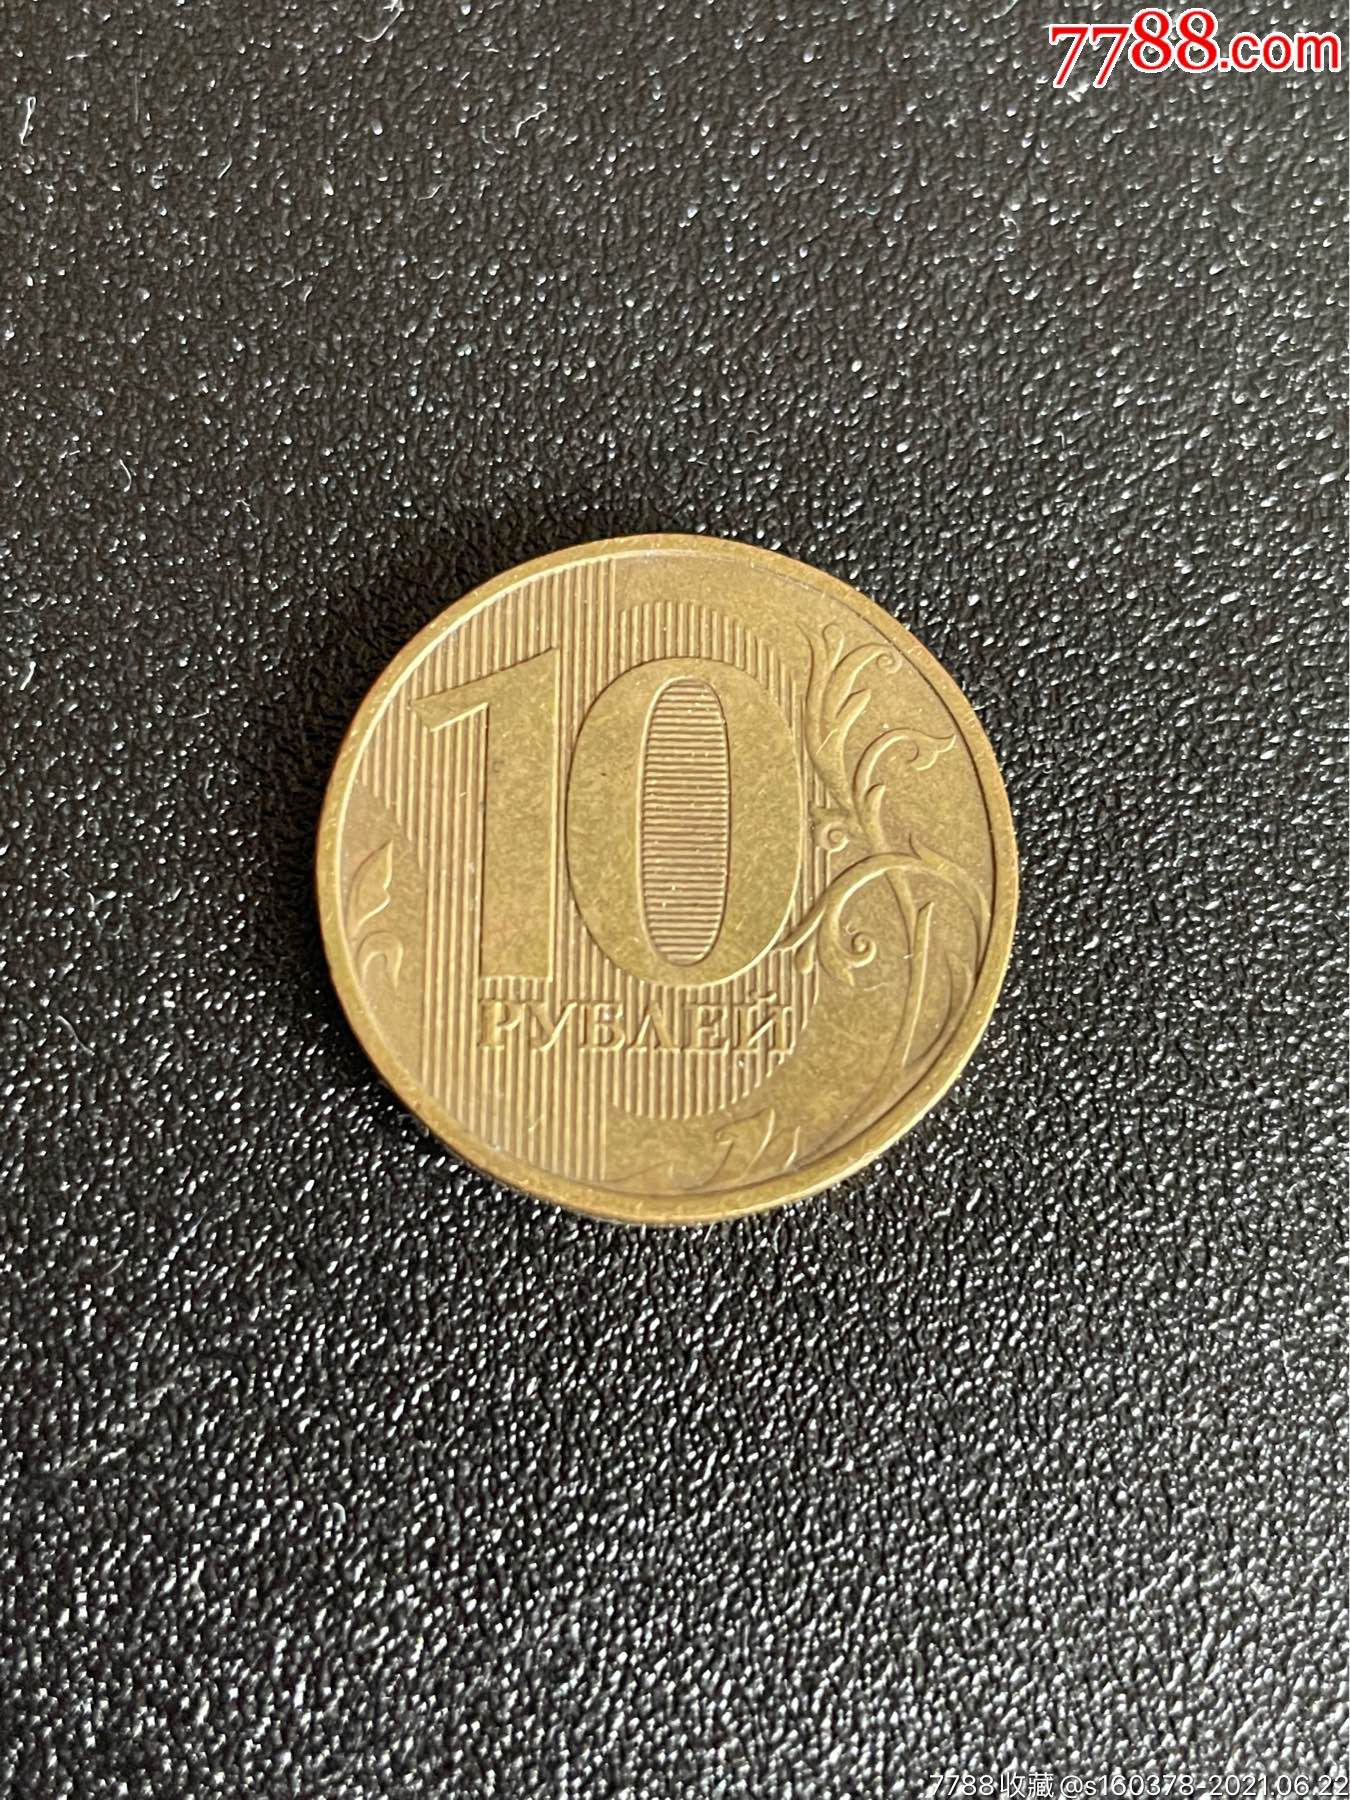 俄国硬币图片1一10图片